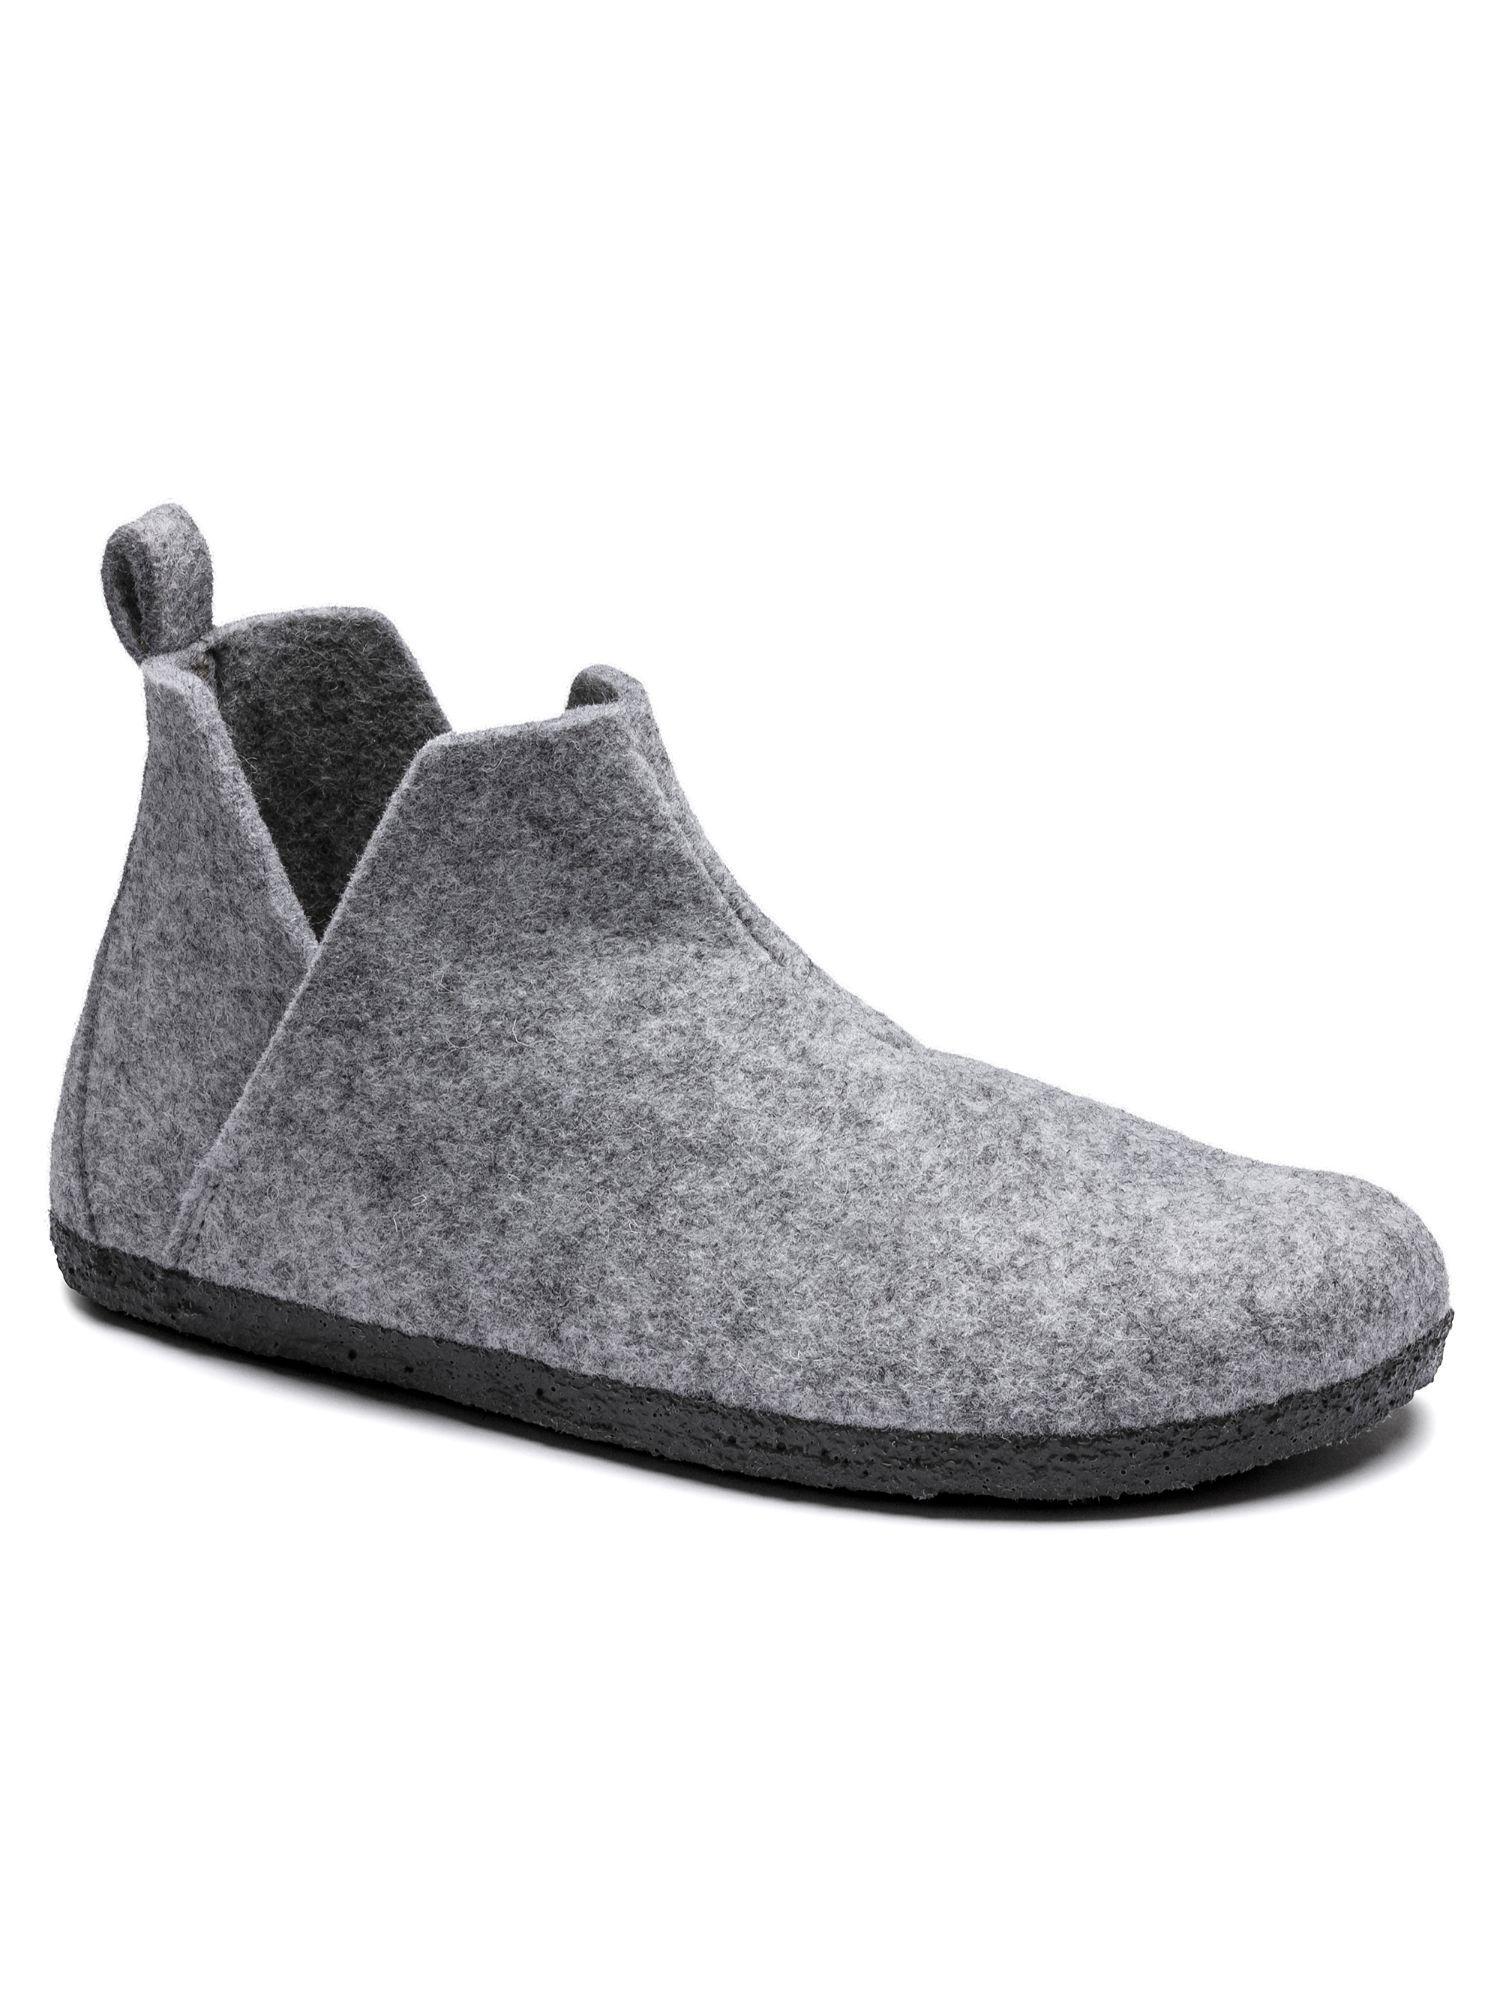 andermatt wool felt gray flat boots